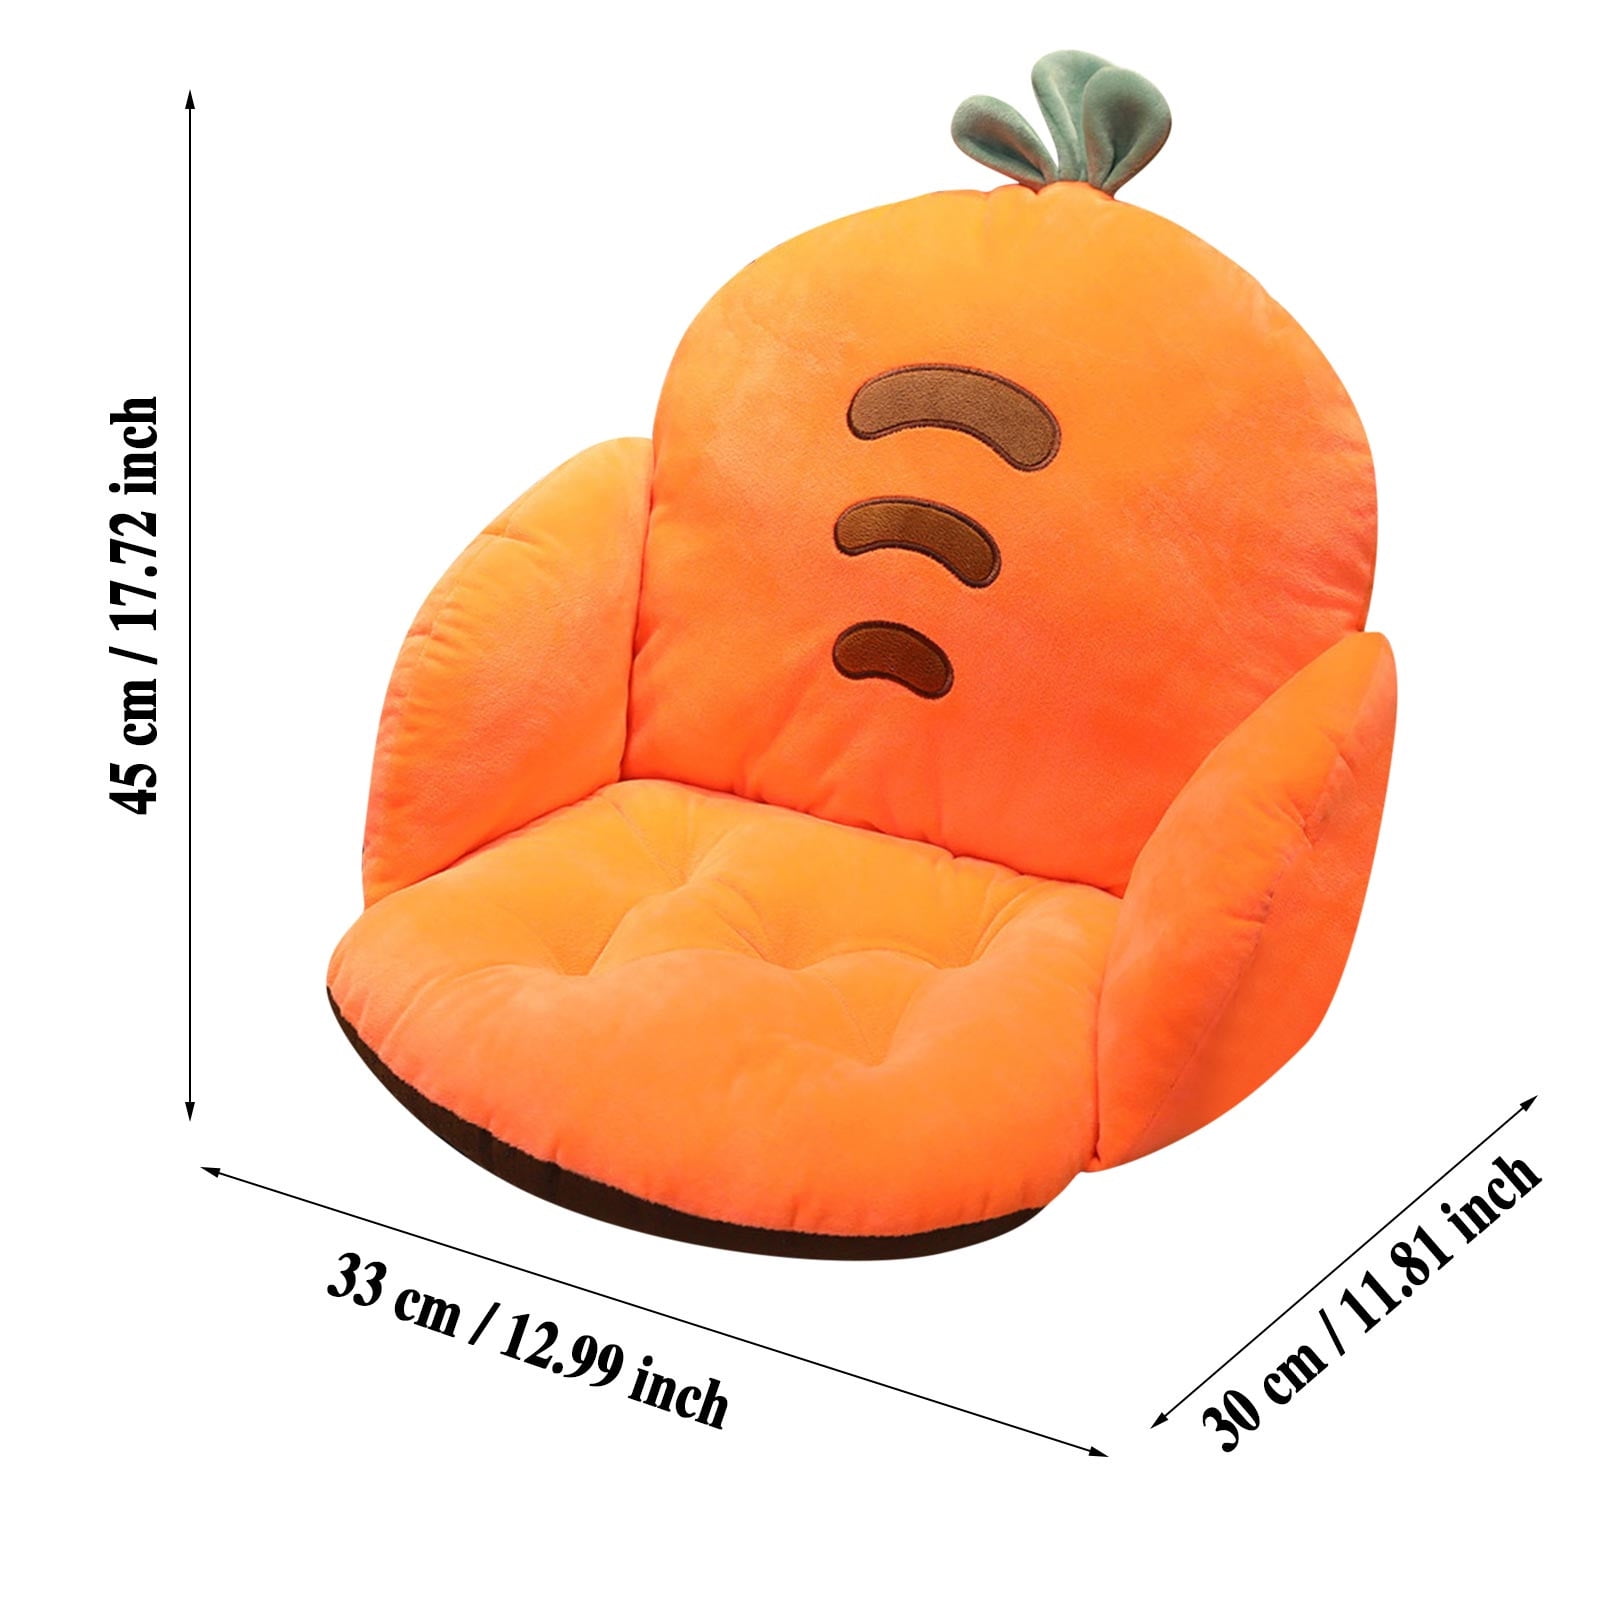 Cartoon Sofa Chair Cushion Cushion Office Seat Cushion for Butt